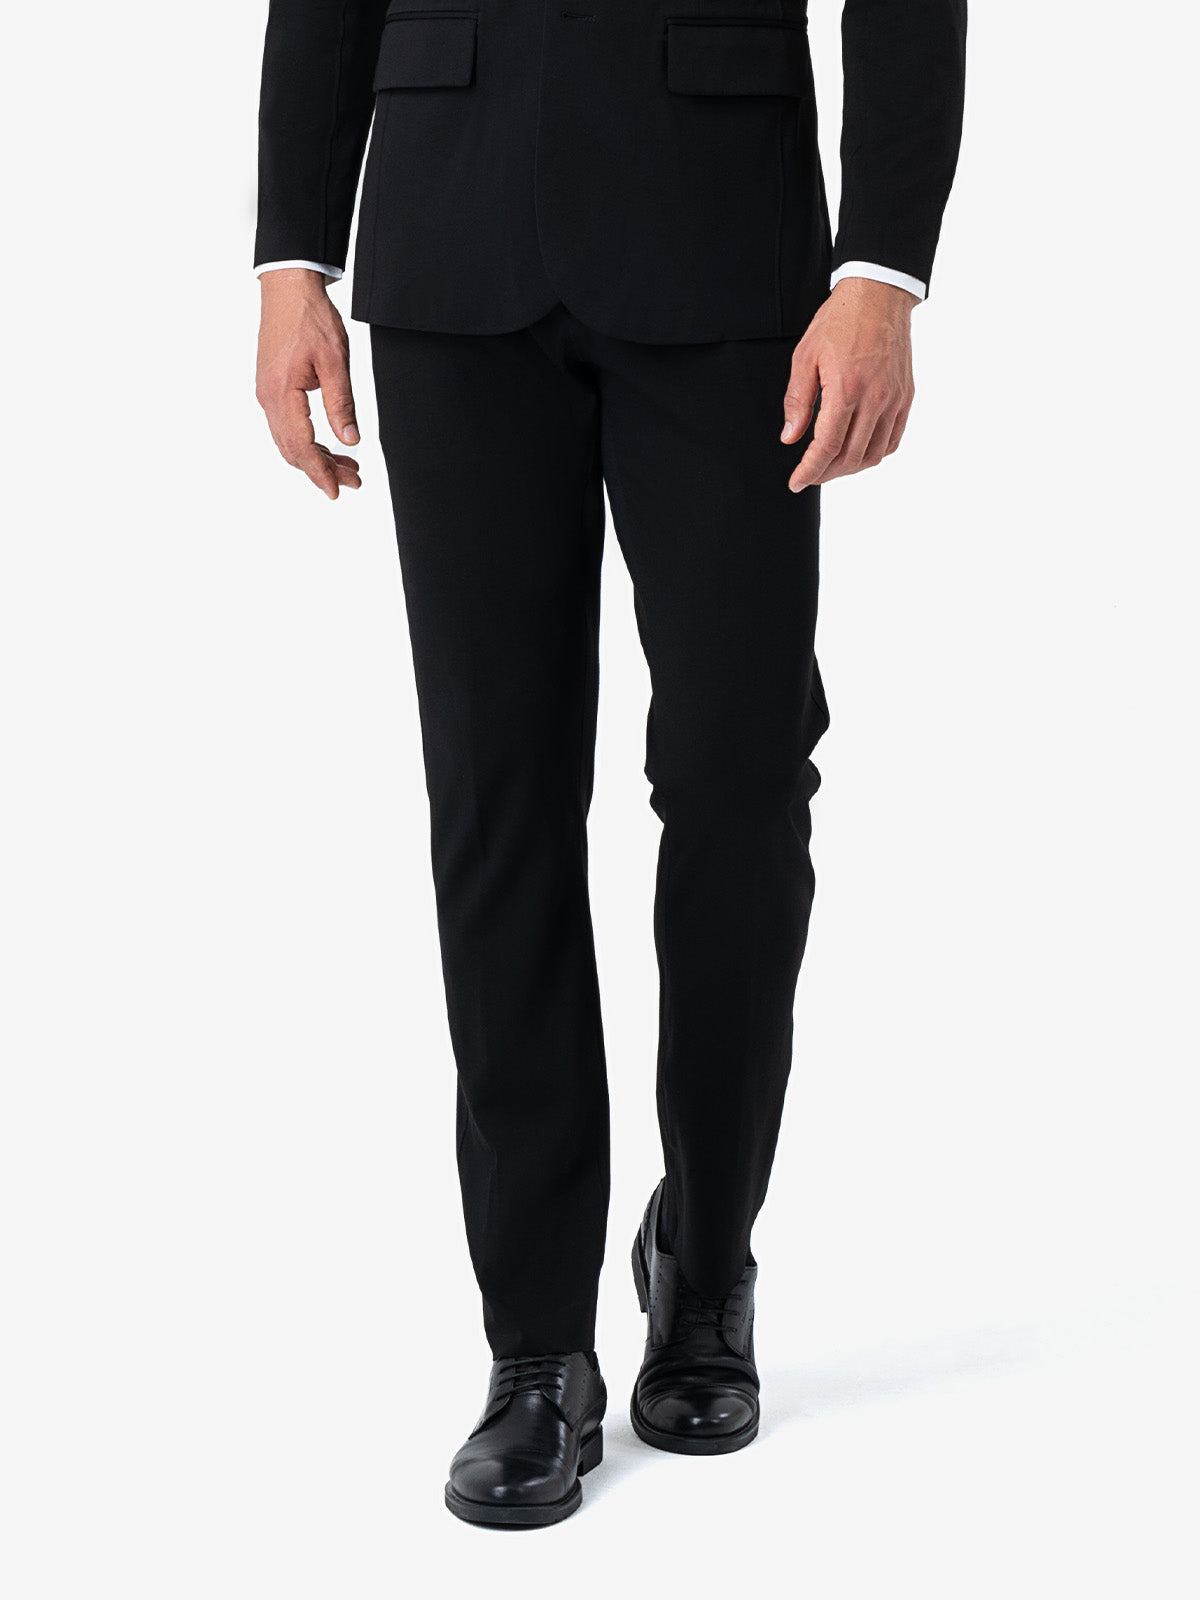 Men's Slim Black Suit Pants